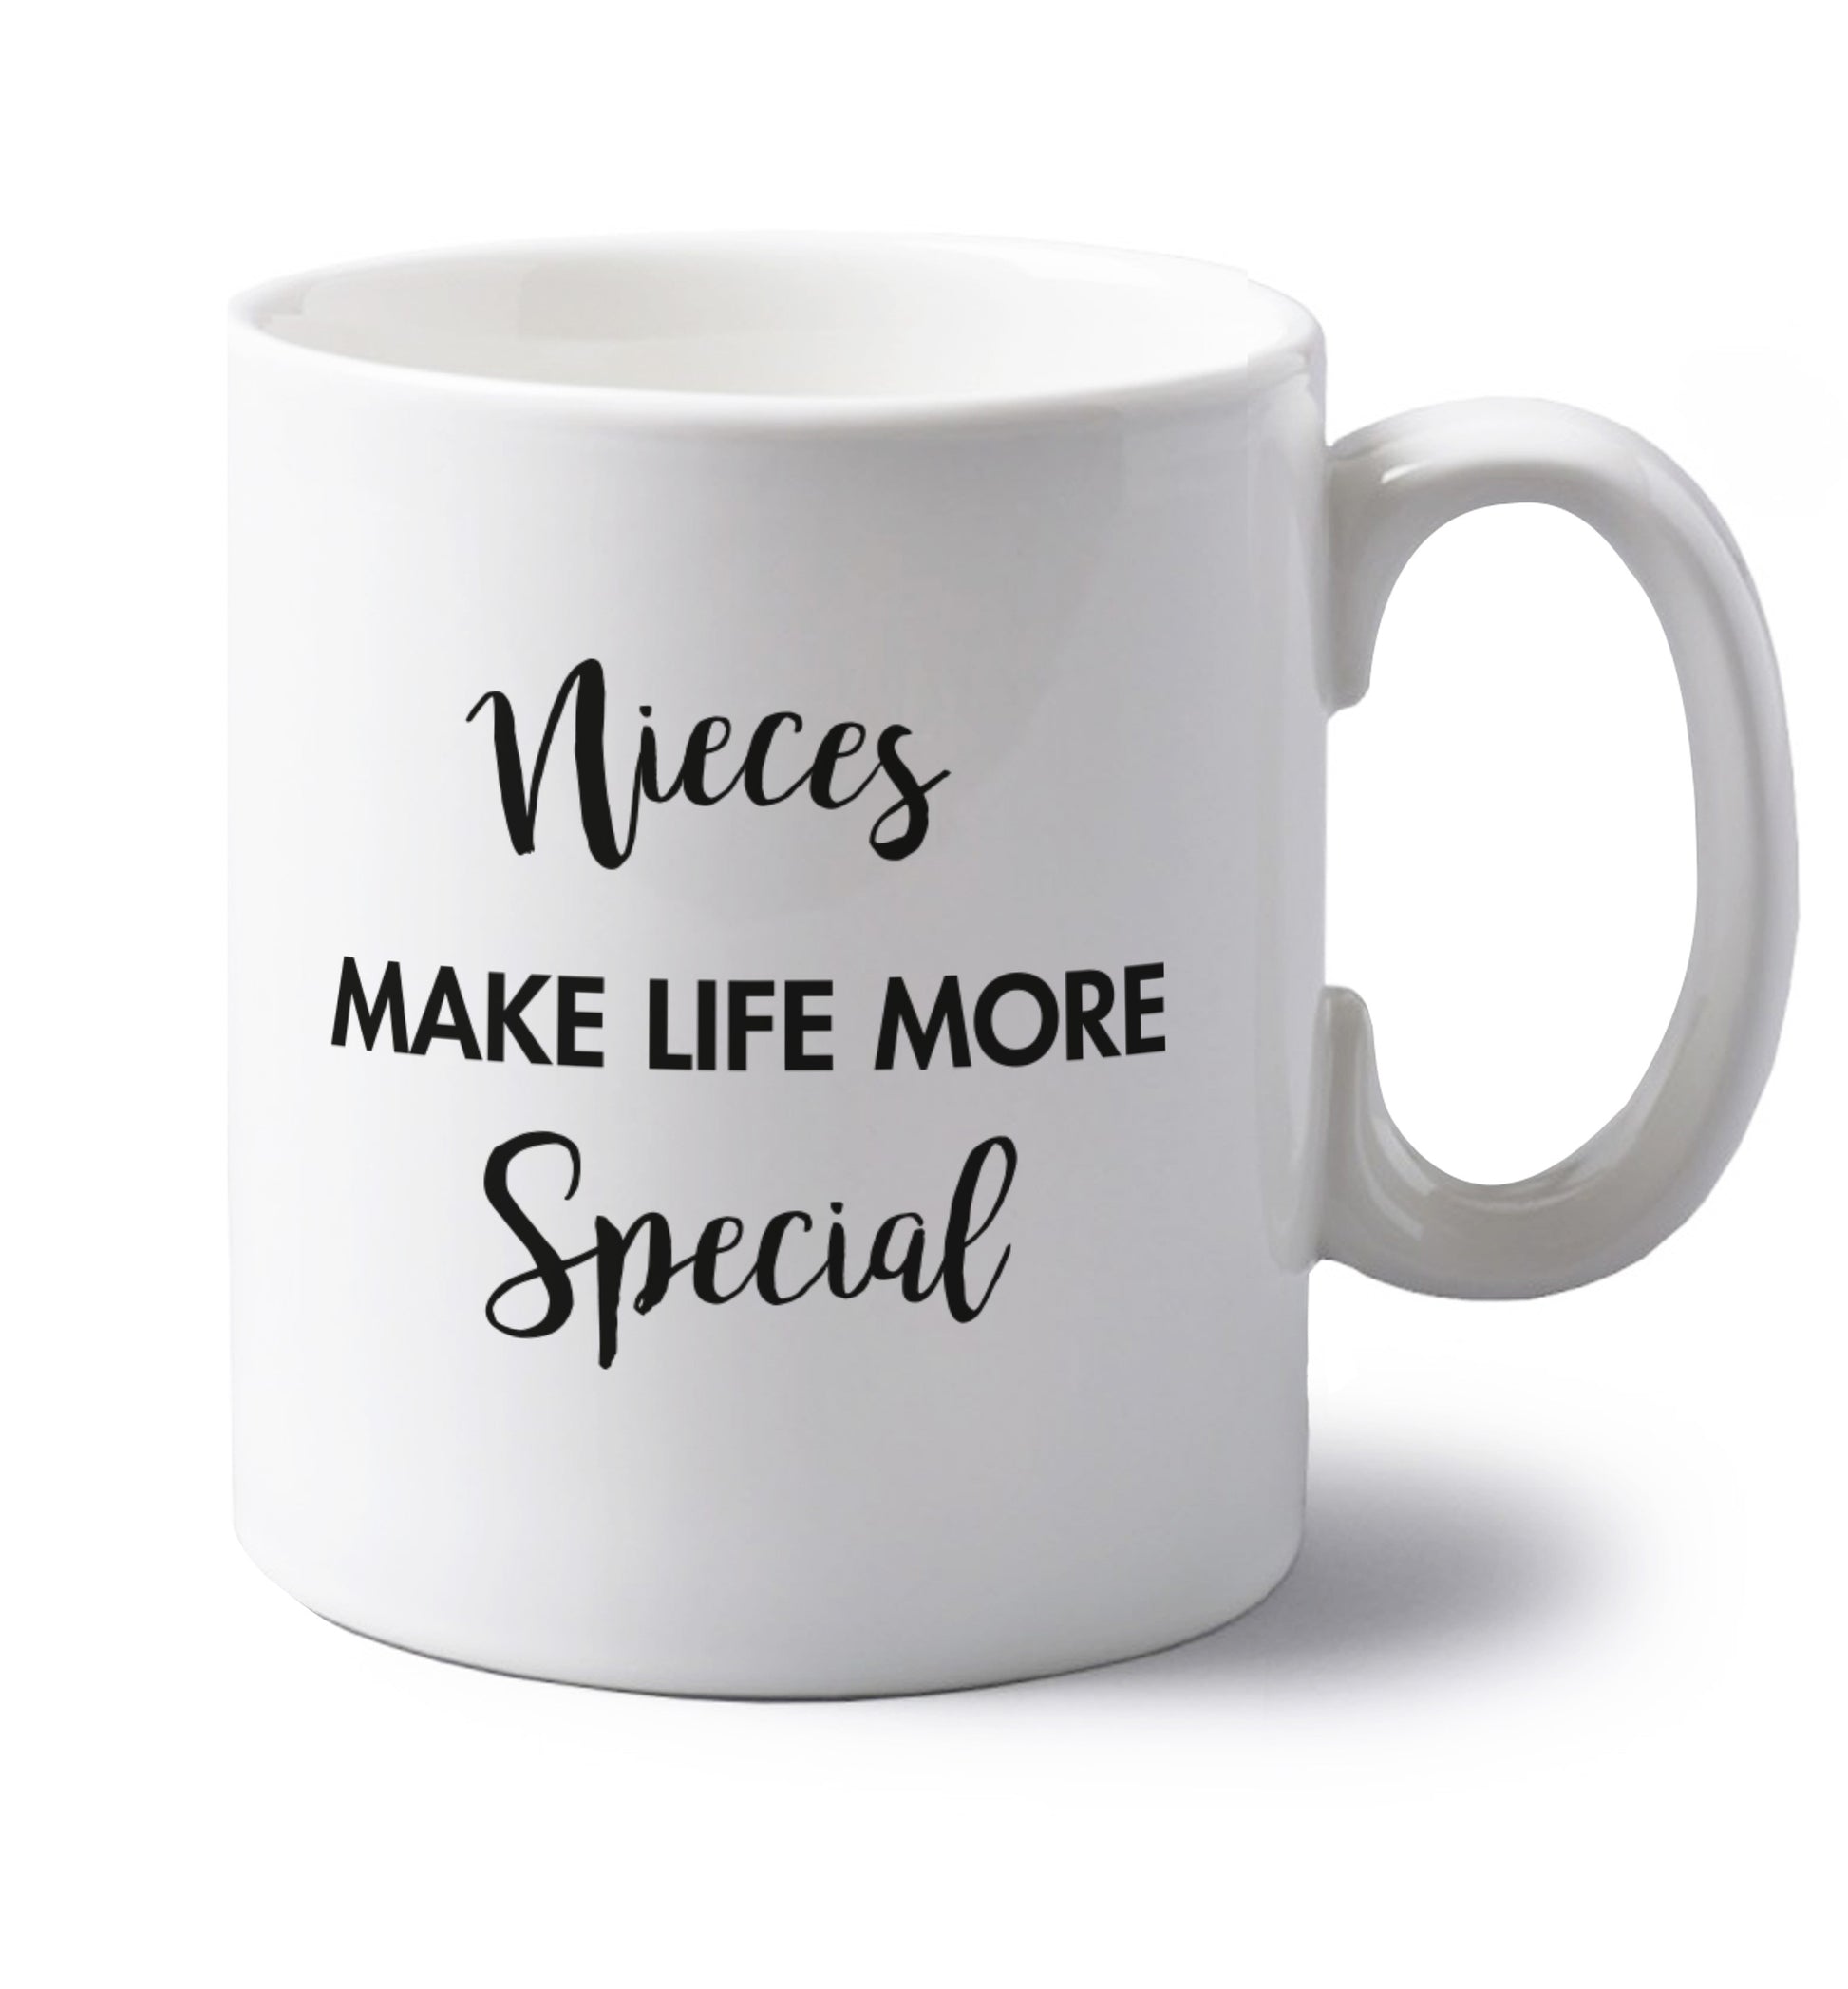 Nieces make life more special left handed white ceramic mug 